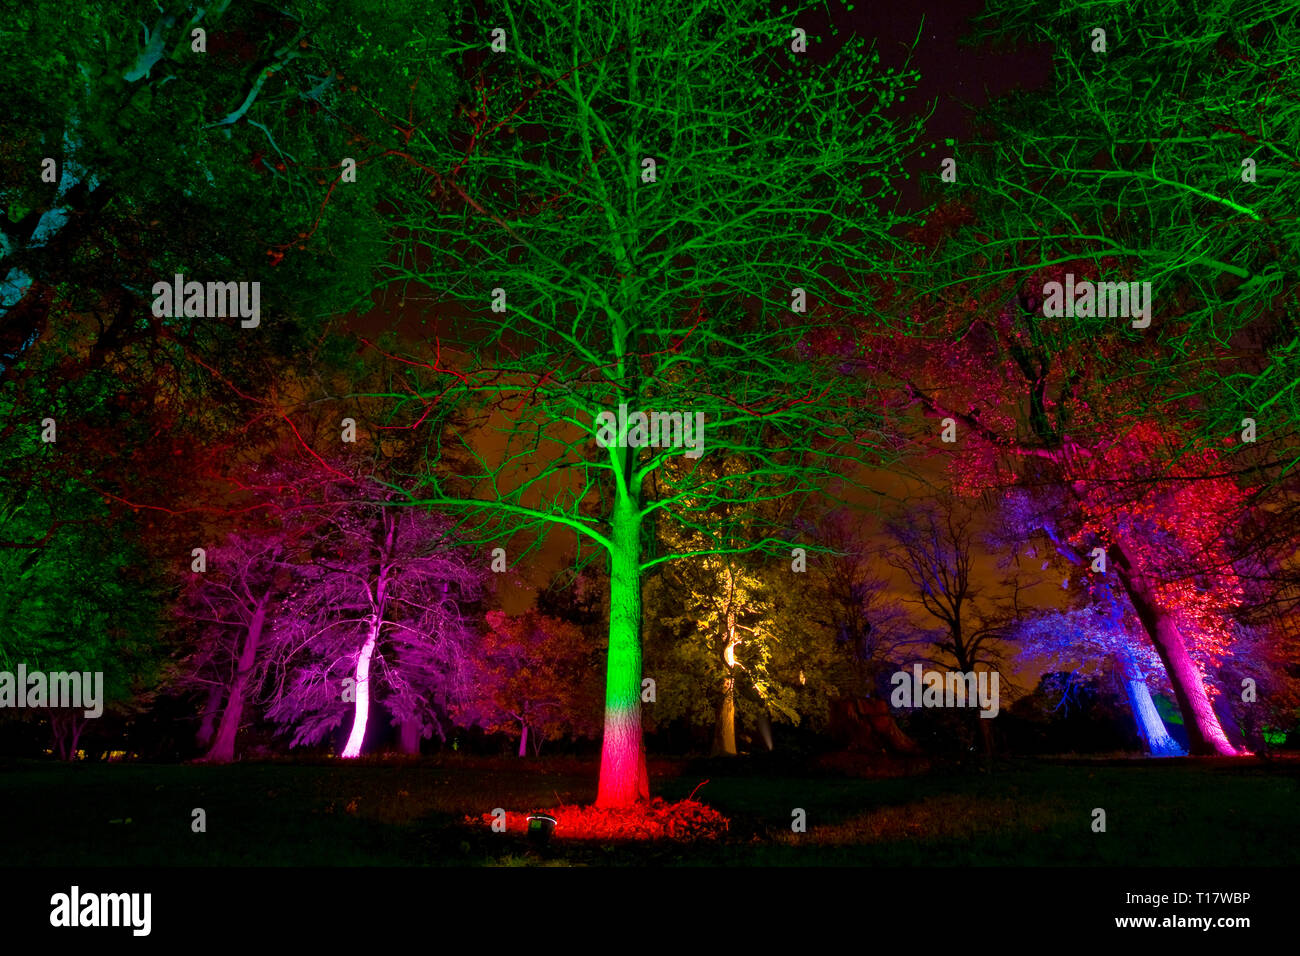 Alberi illuminati nel bosco di notte con colori brillanti Foto Stock